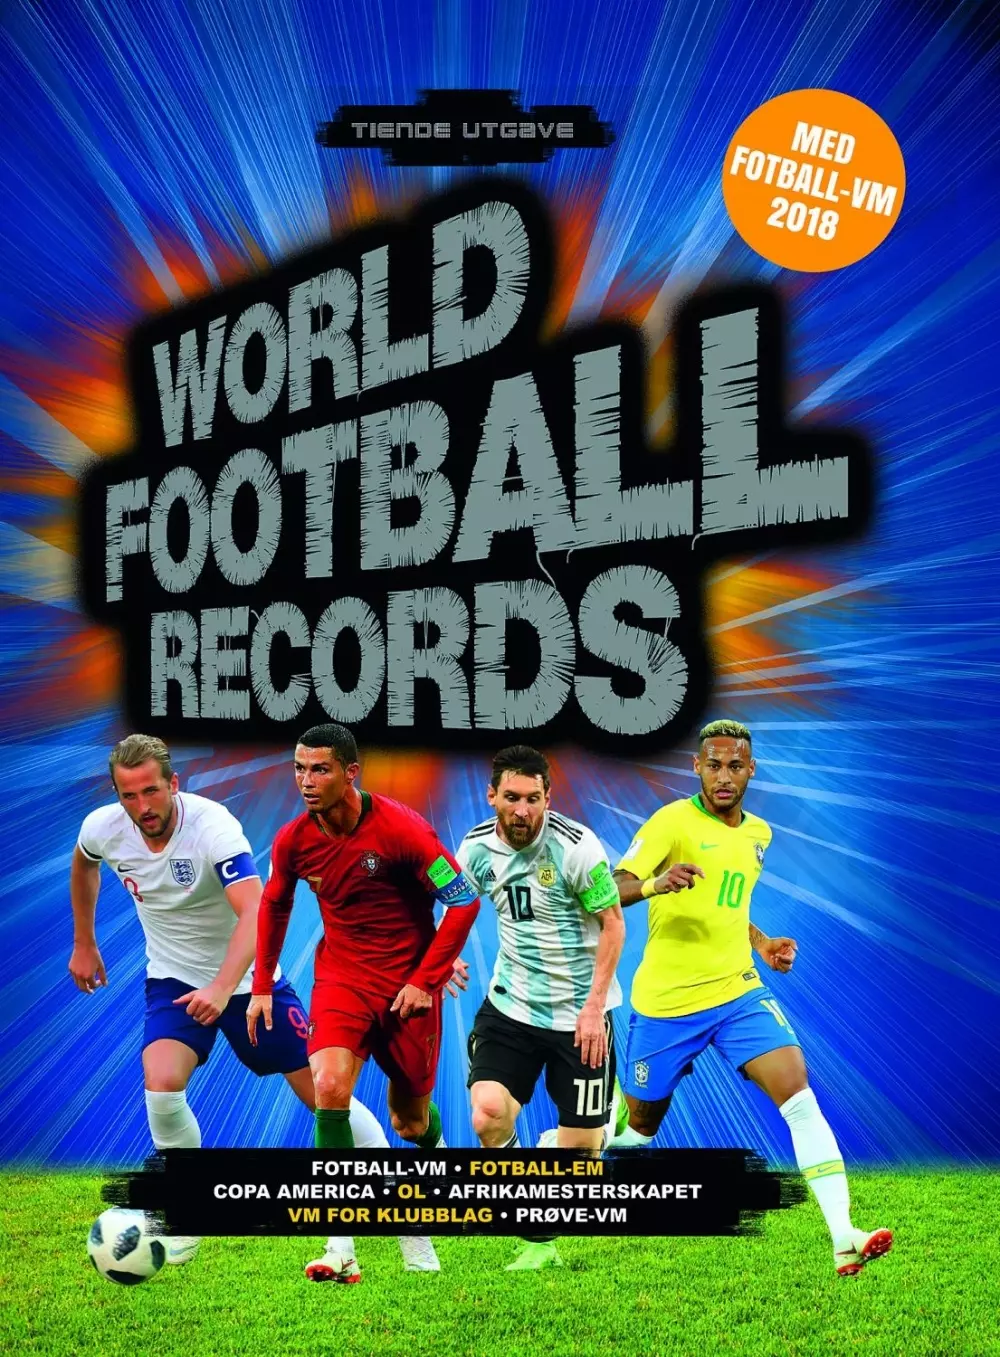 World Football Records 10. utgave med fotball VM 2018 